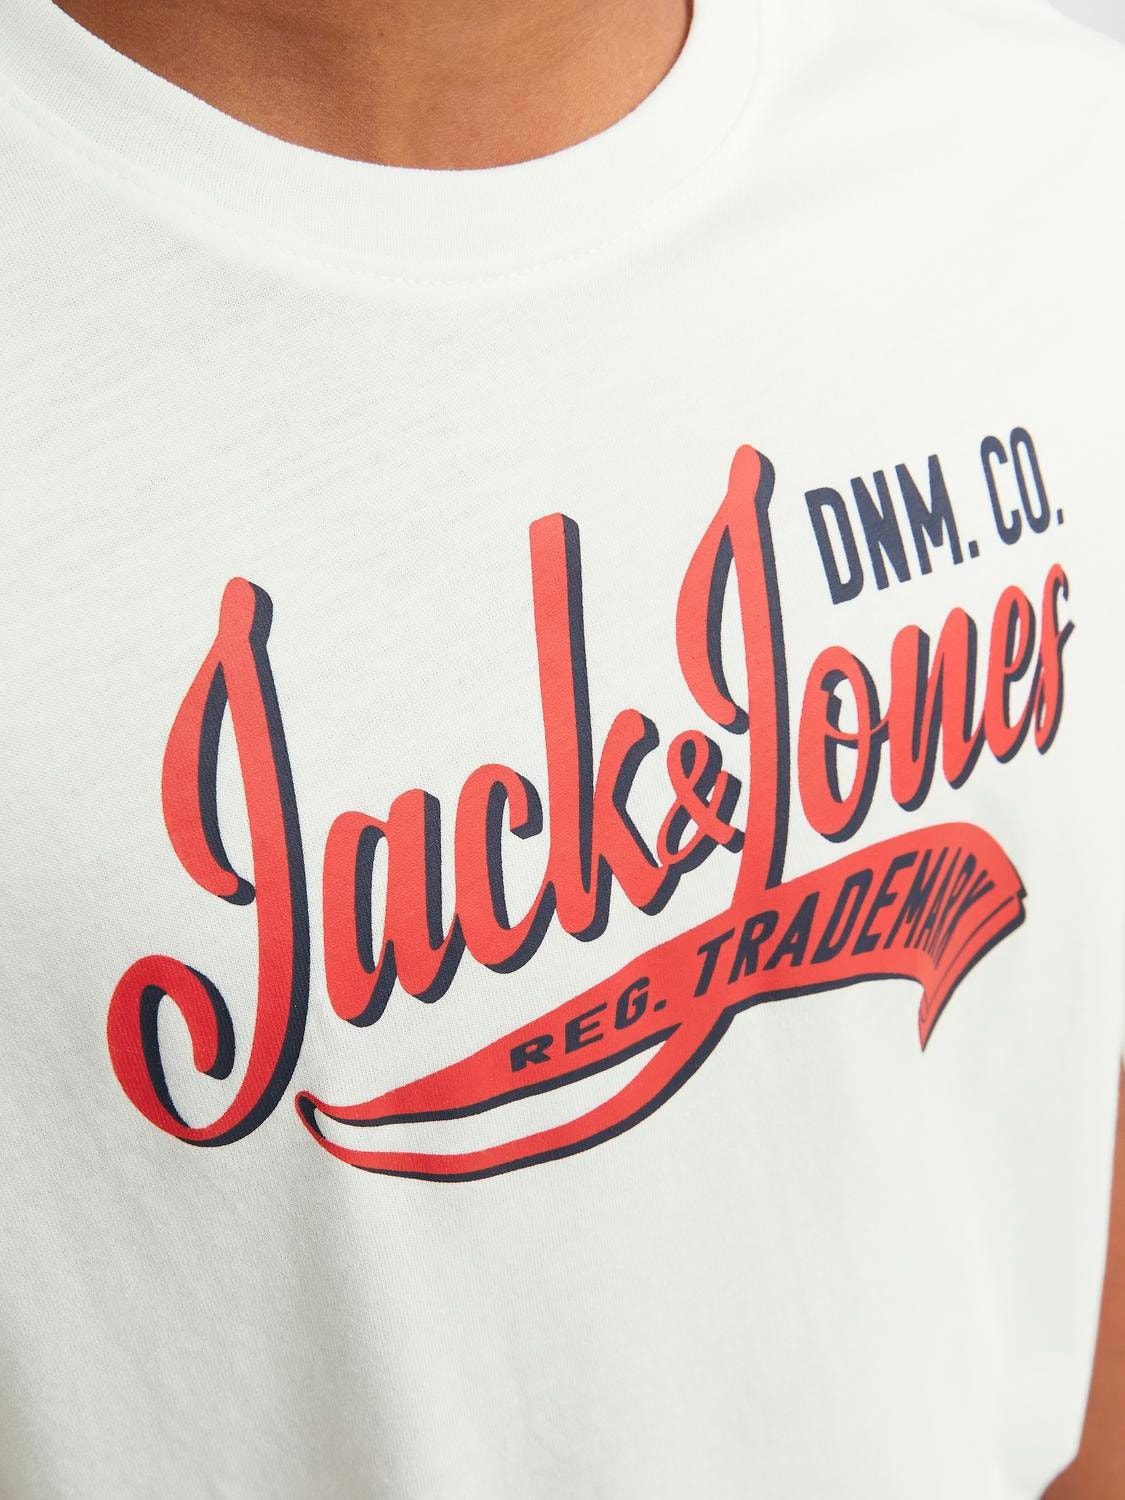 Jack & Jones Bedrukt T-shirt Voor jongens -Cloud Dancer - 12237367